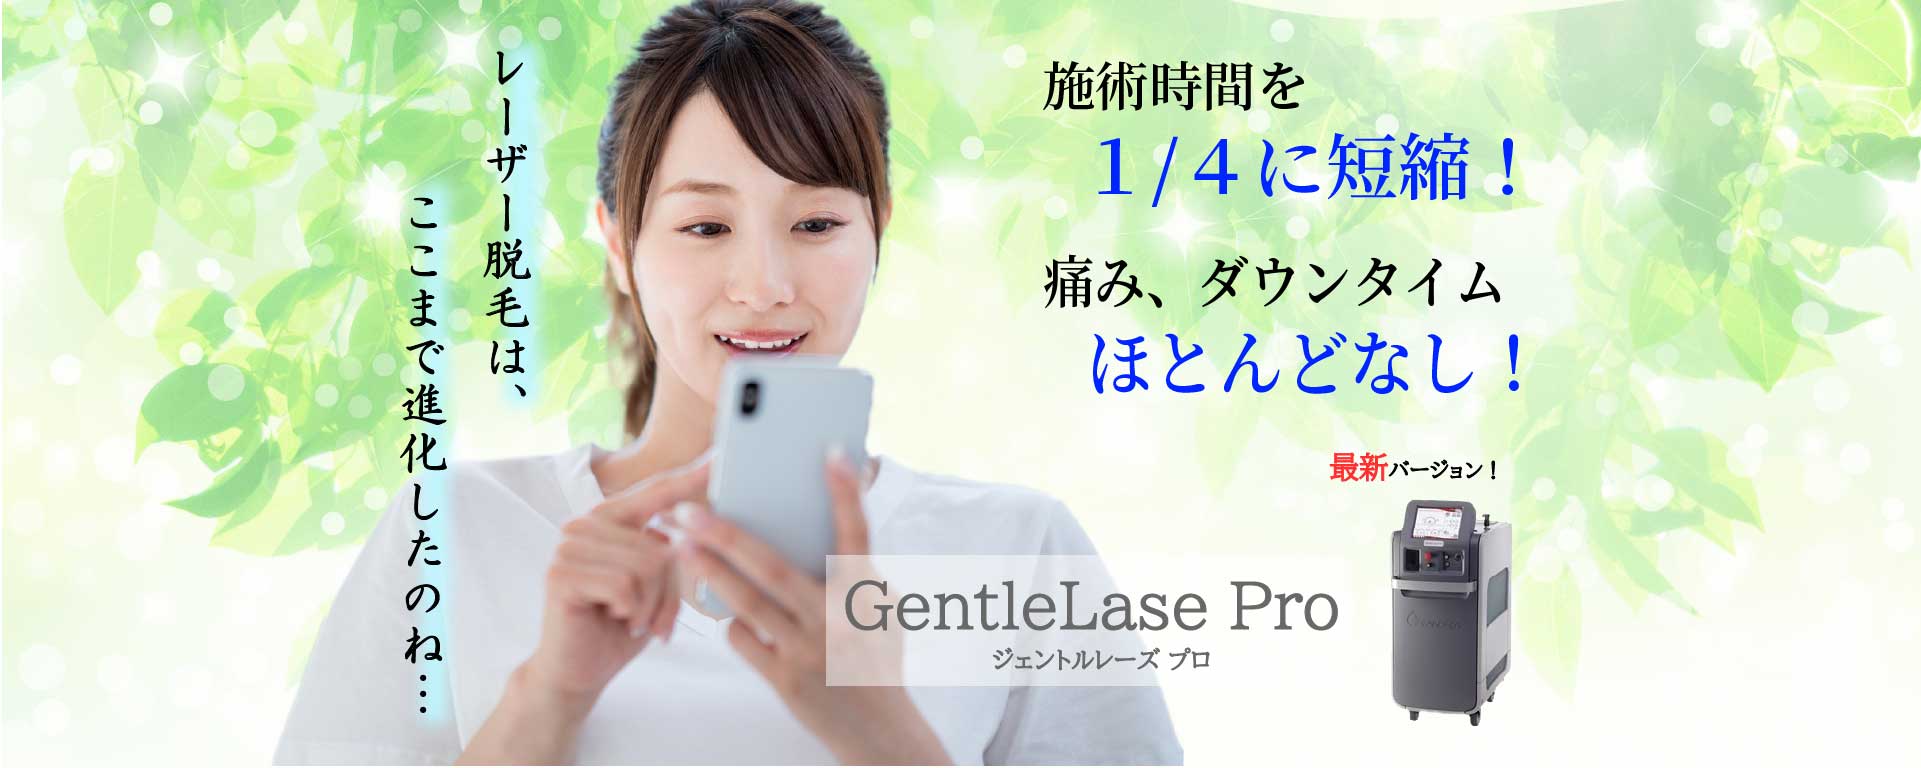 ジェントルレーズプロ-GentleLase Pro